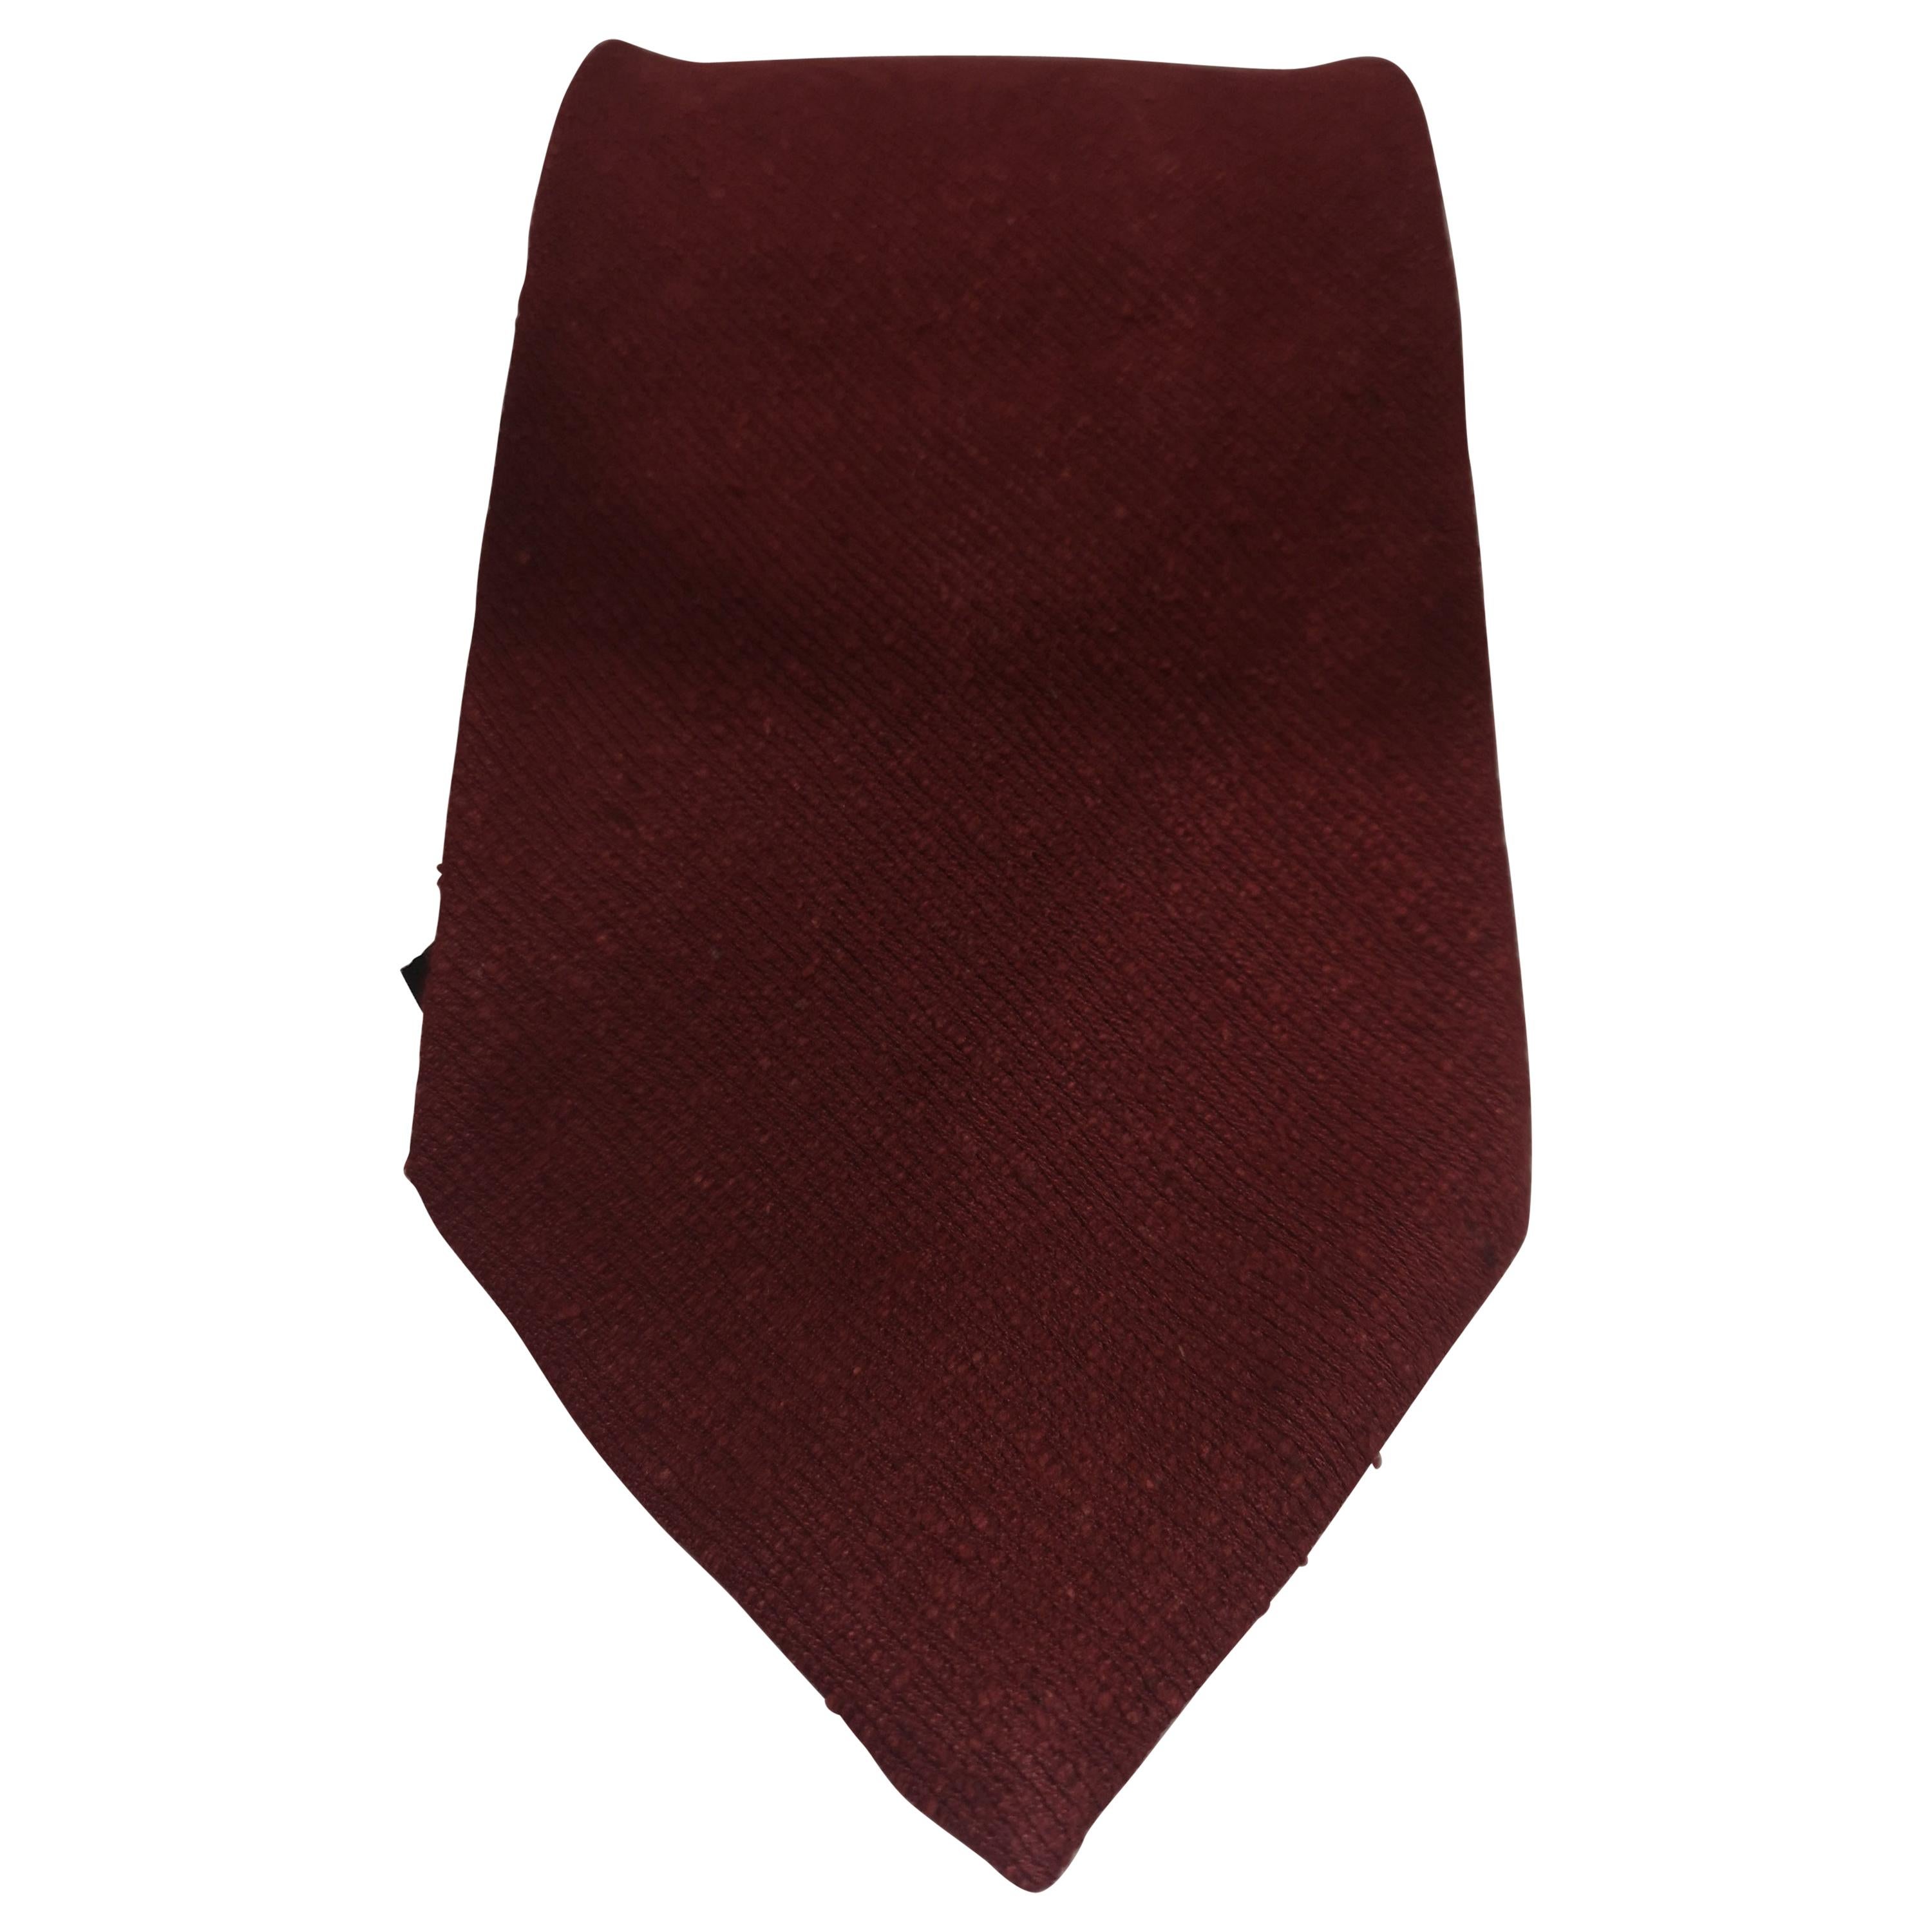 Vintage red tie